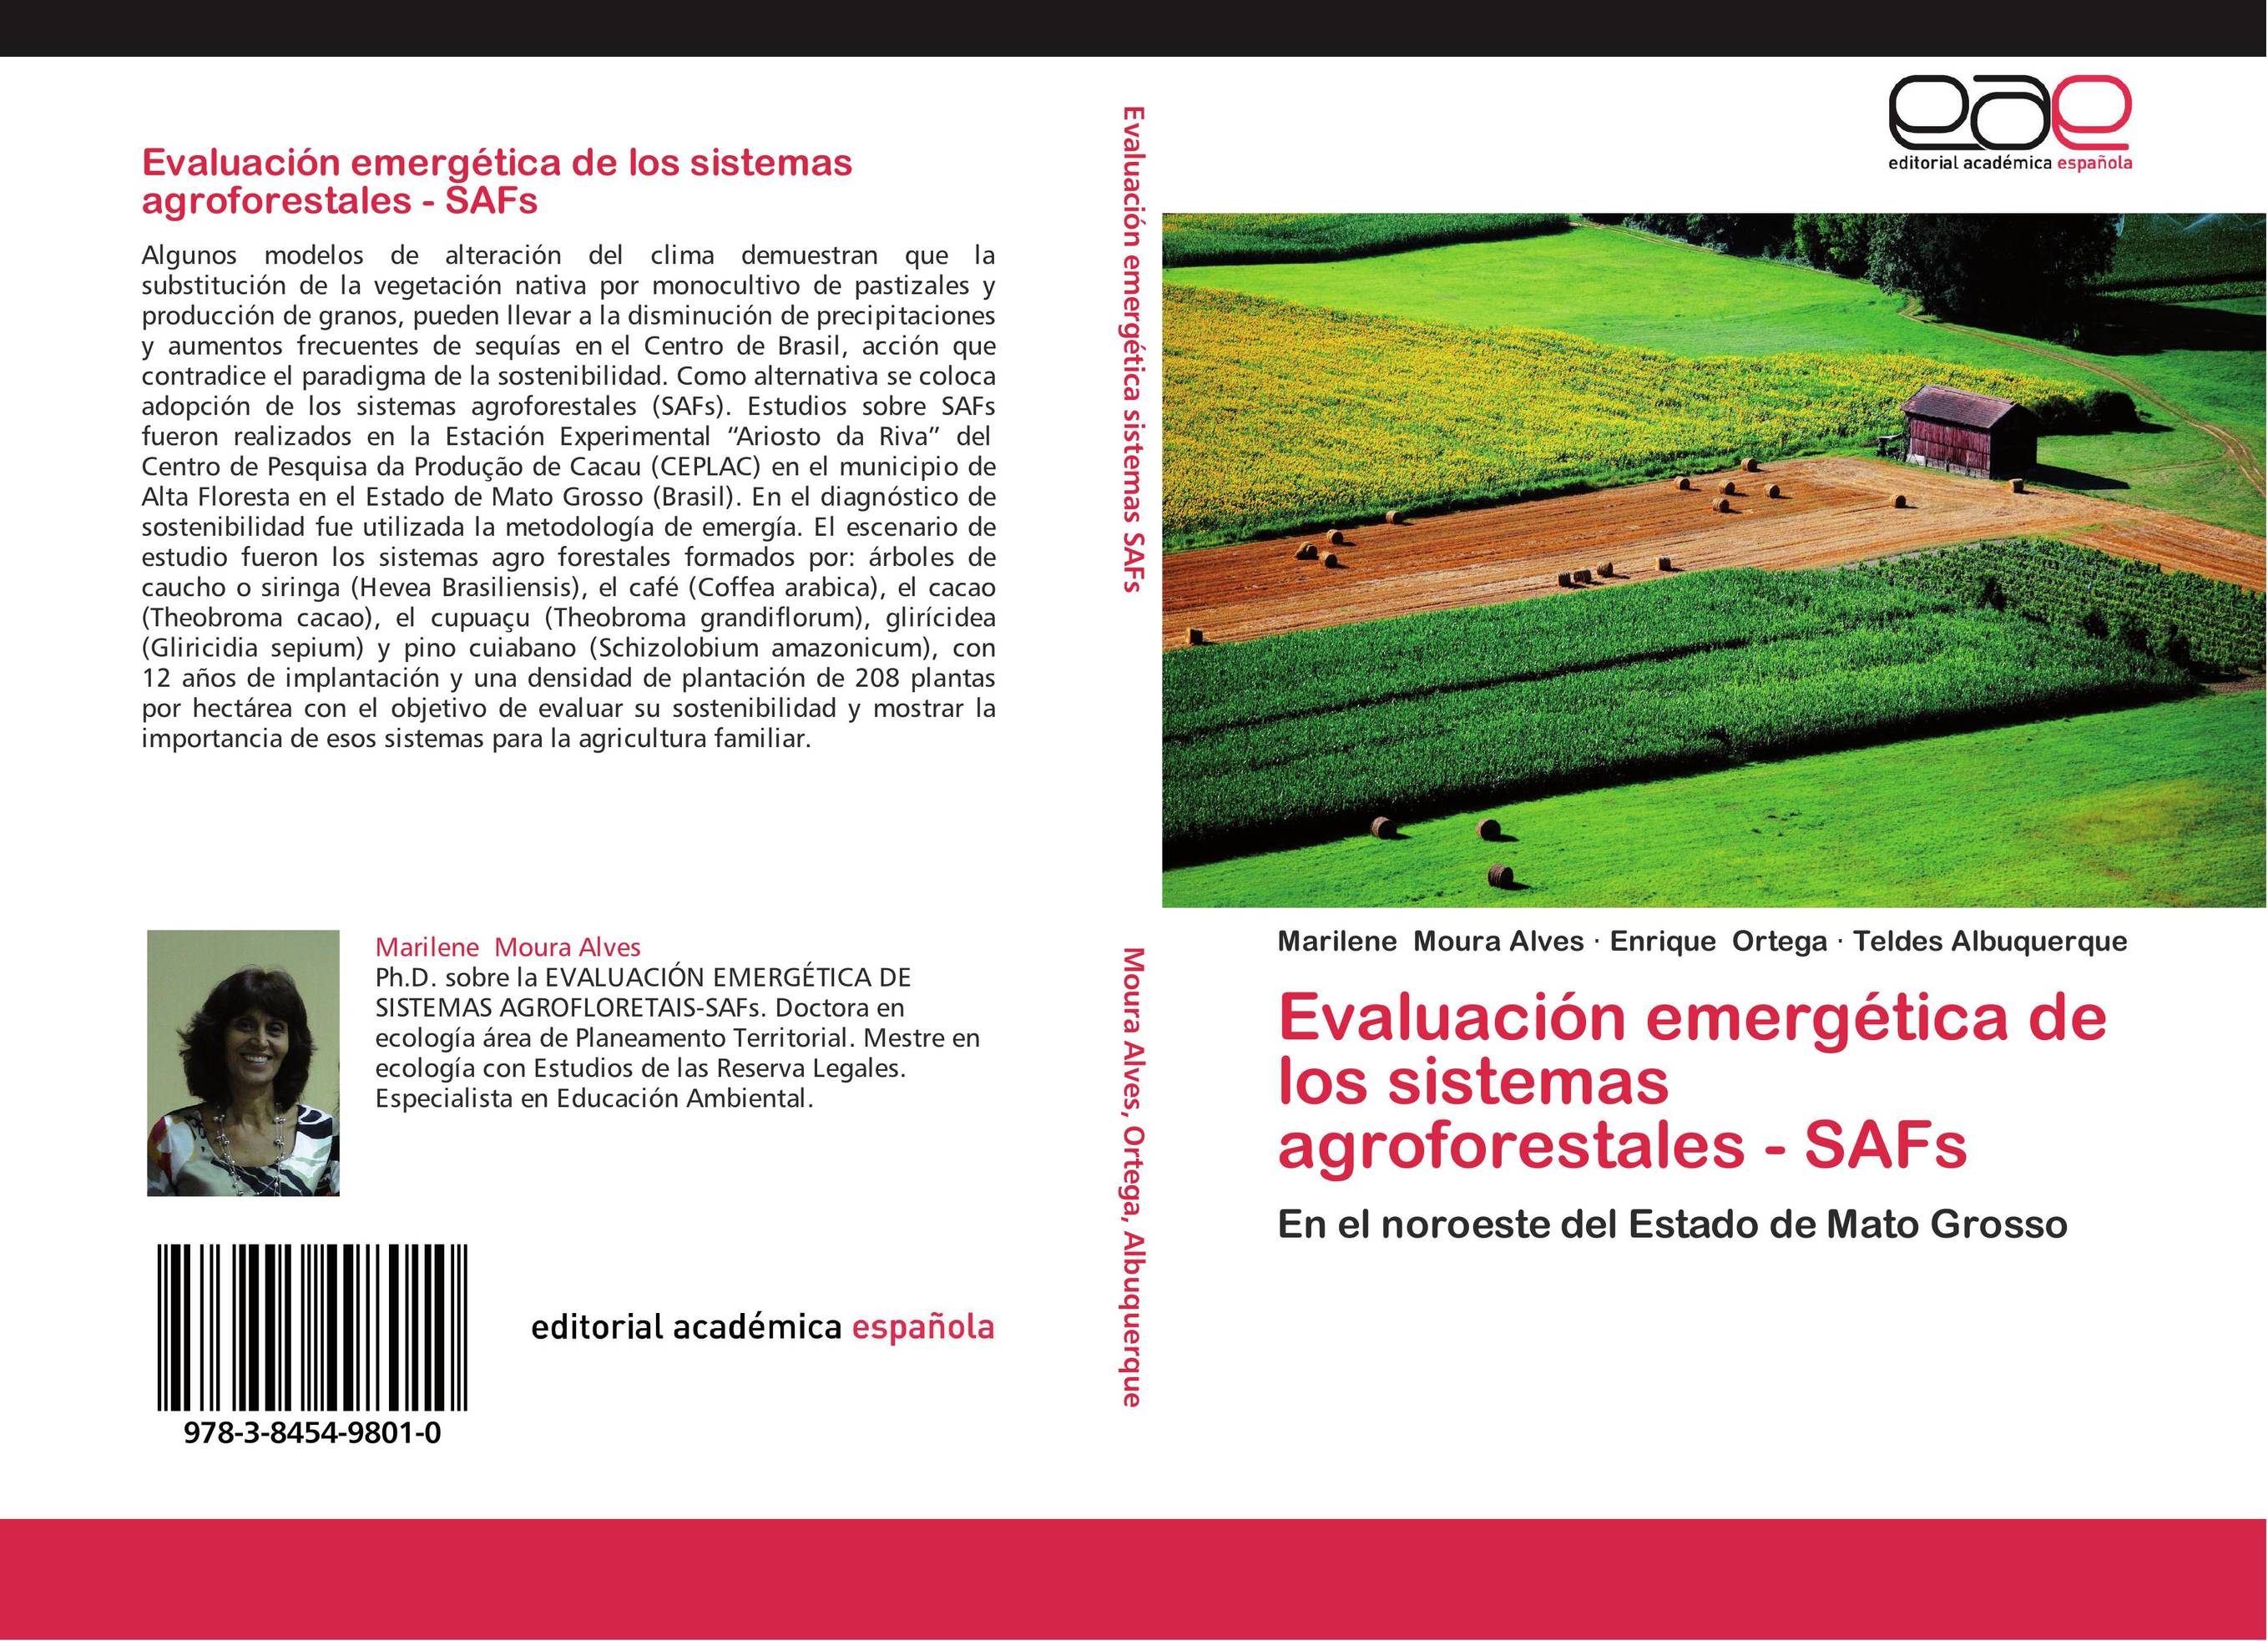 Evaluación emergética de los sistemas agroforestales - SAFs